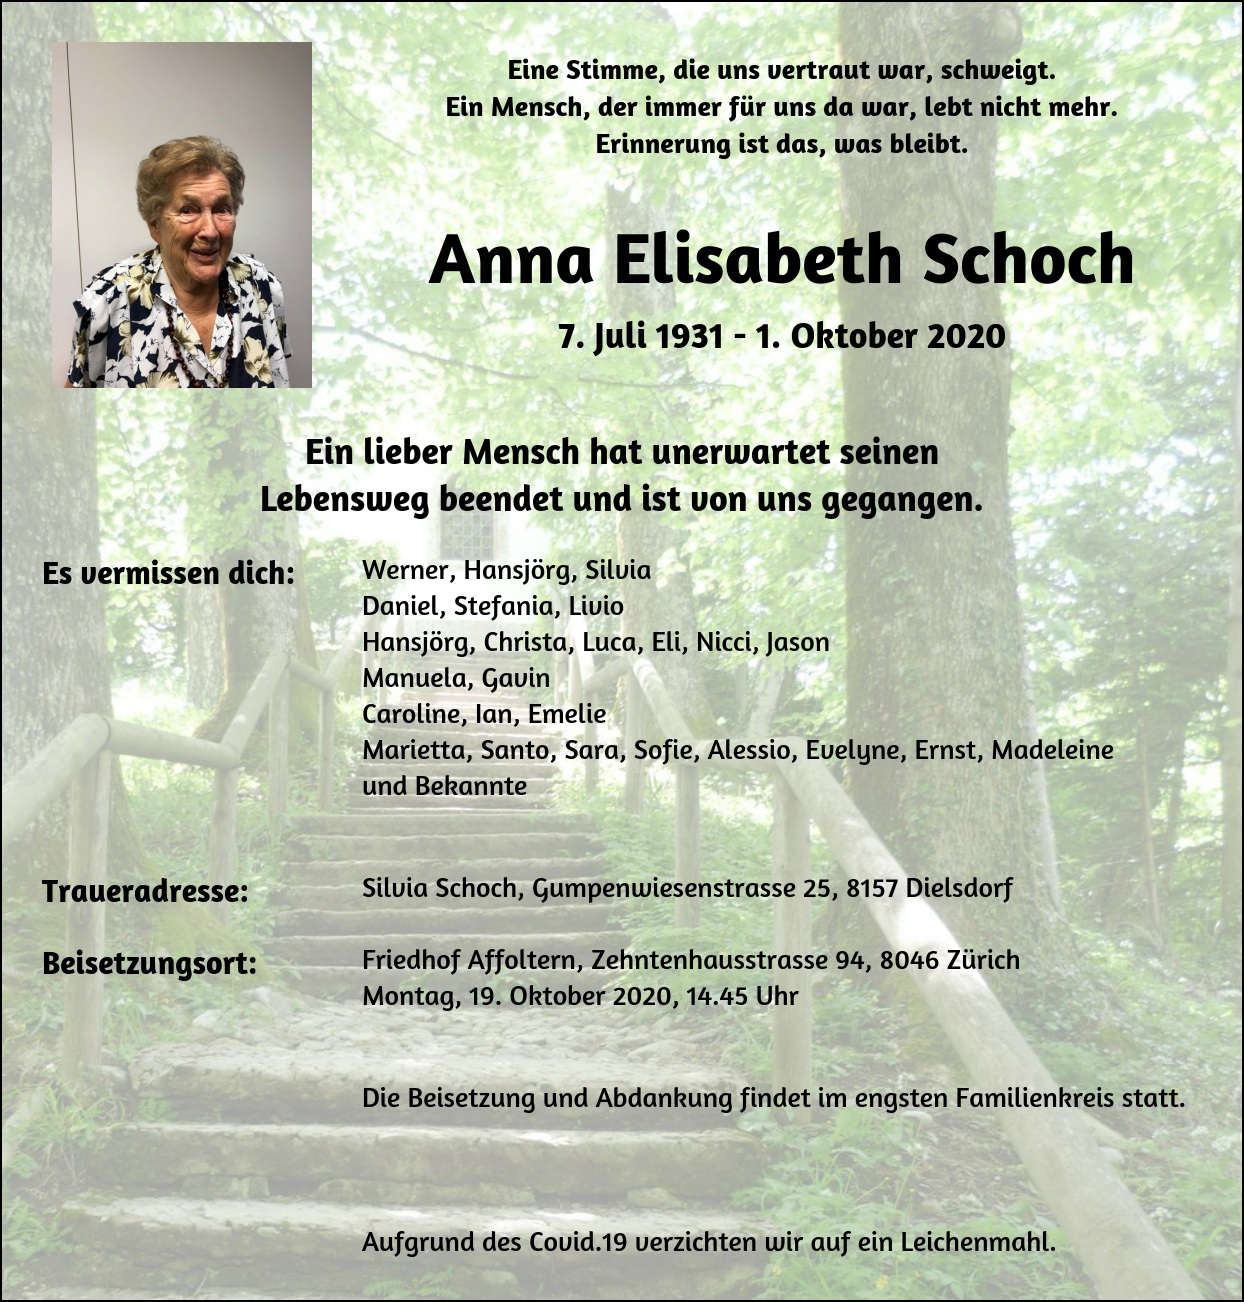 Anna Elisabeth Schoch